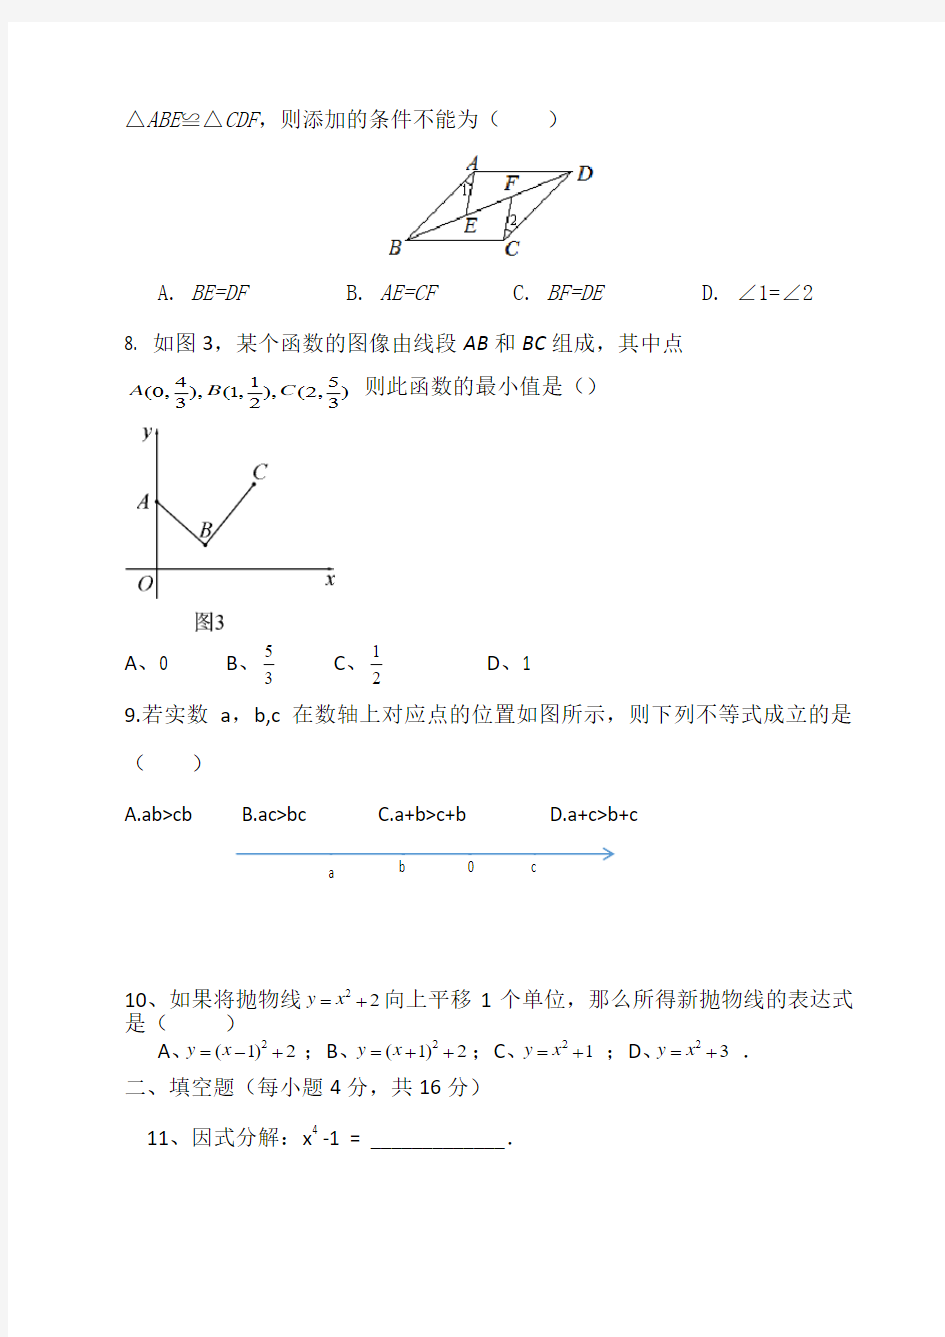 2016年芷江侗族自治县九年级数学毕业会考模拟试题